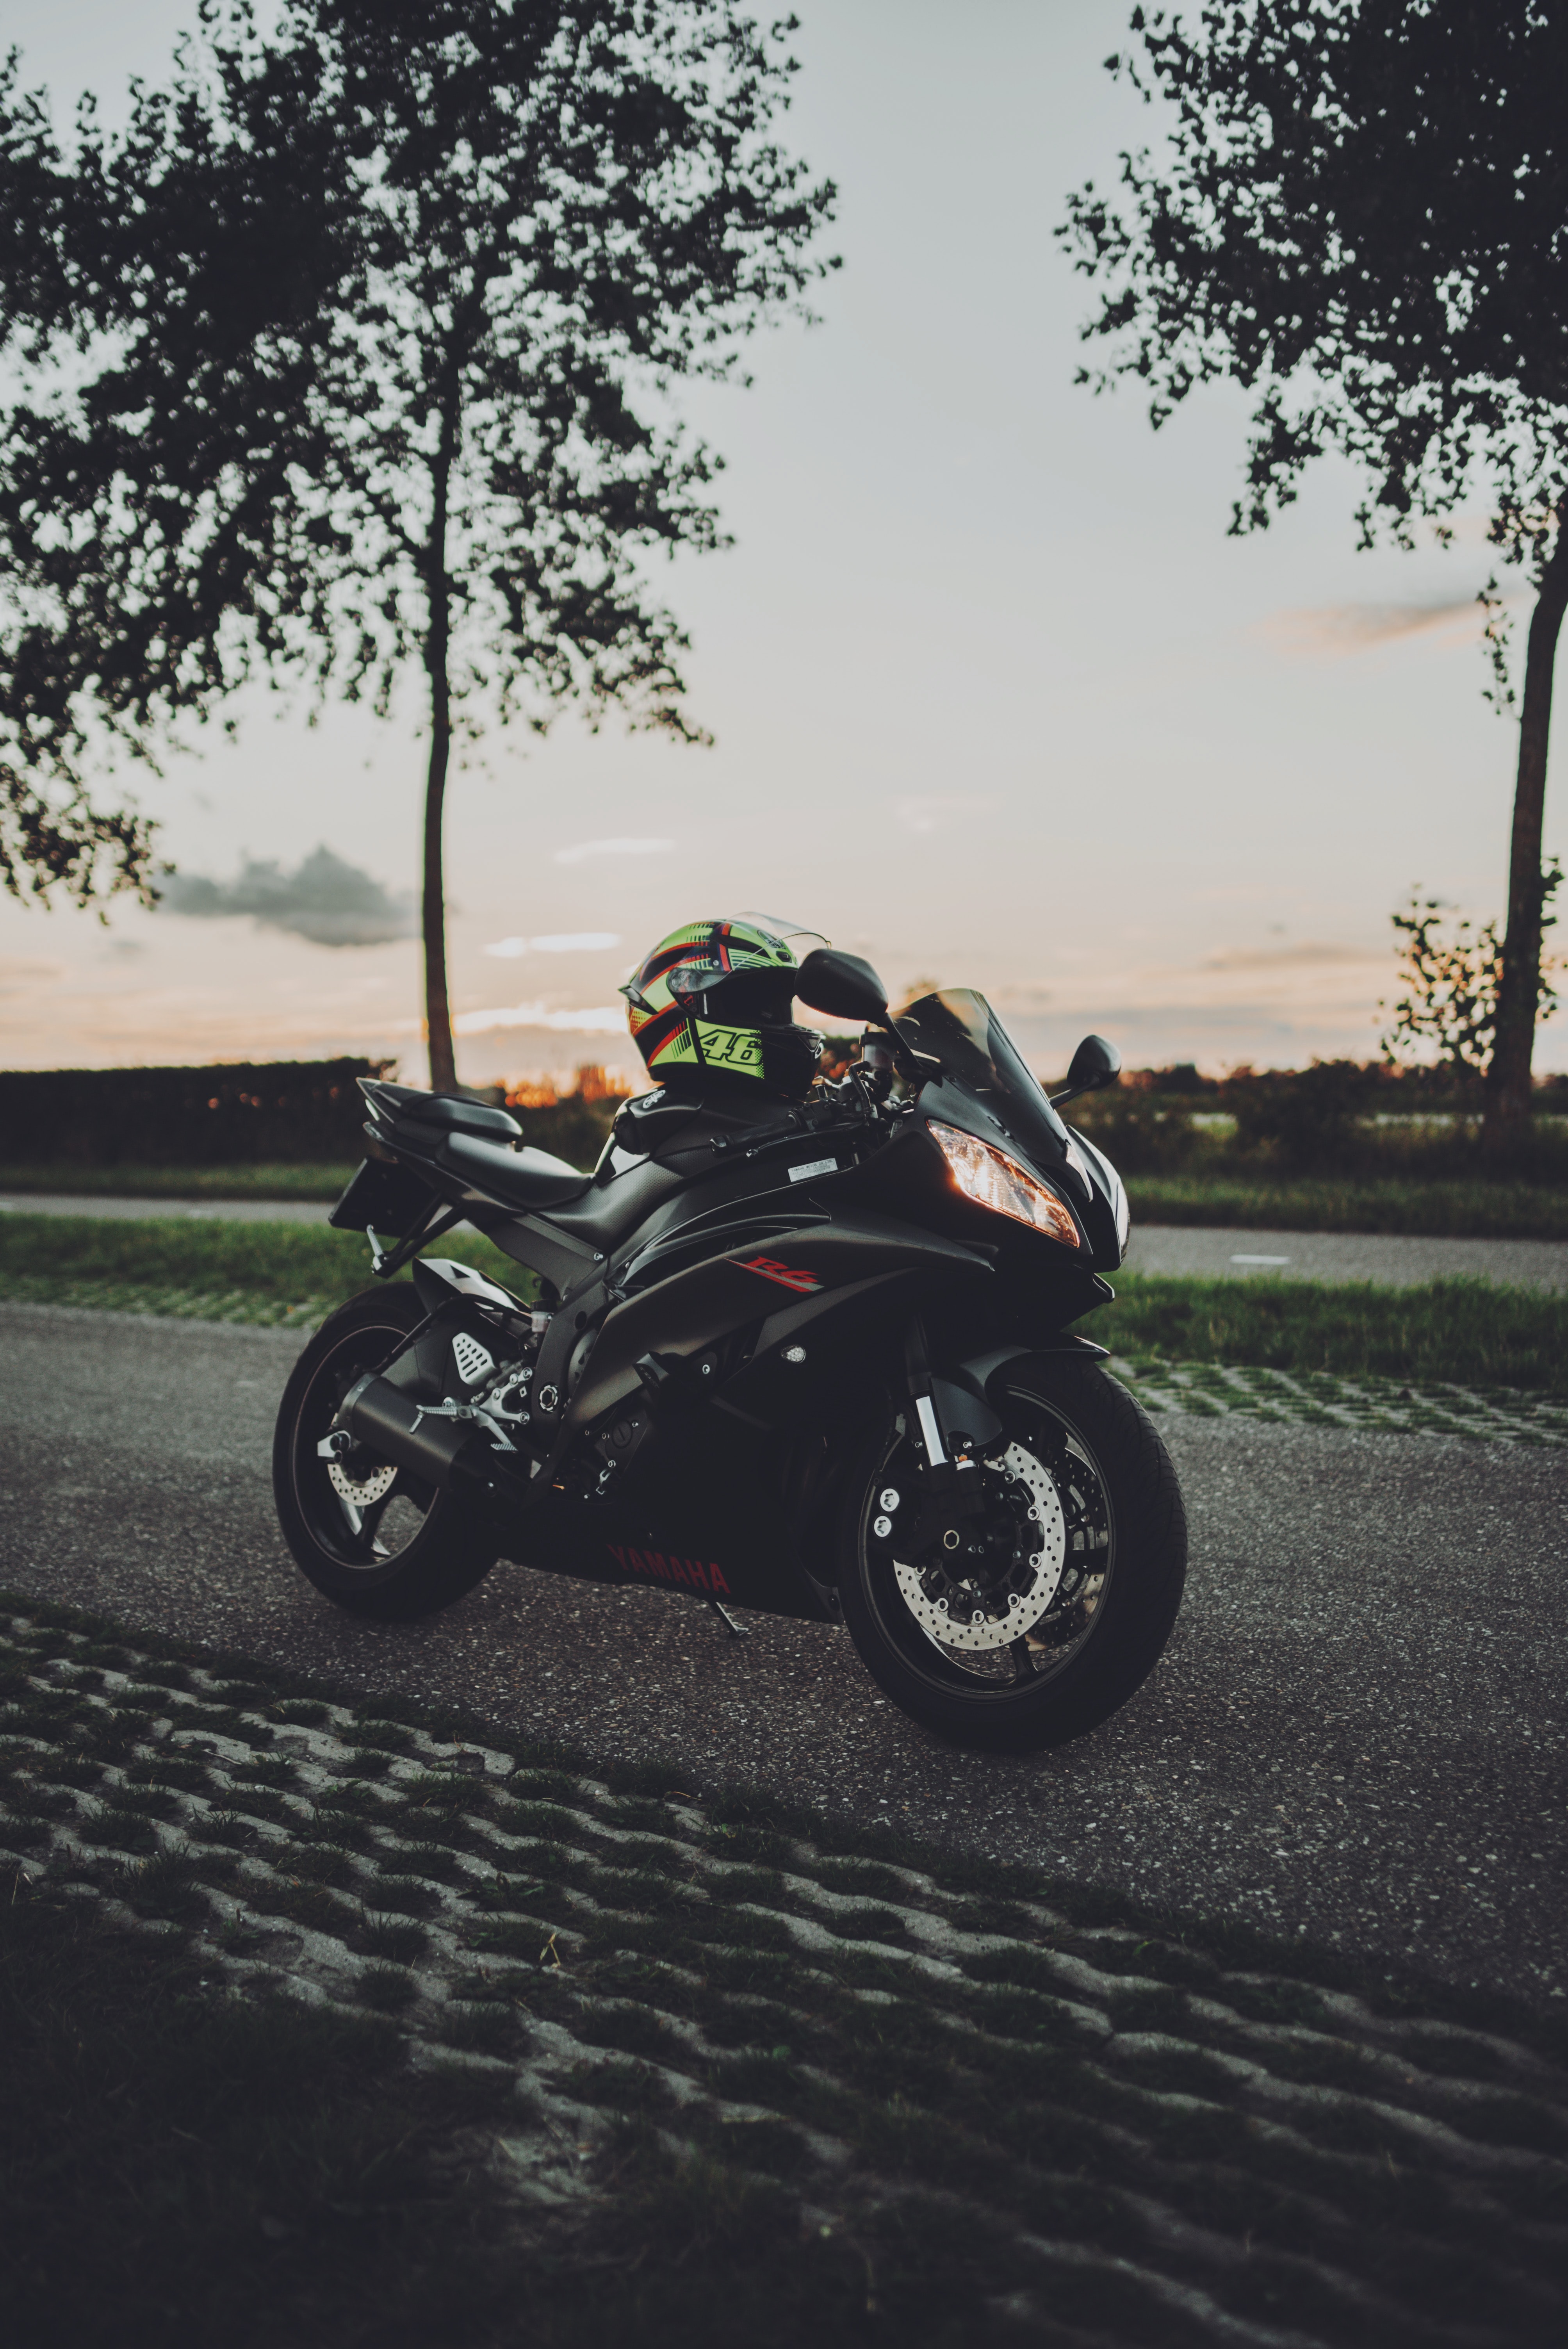 helmet, motorcycles, side view, motorcycle, bike